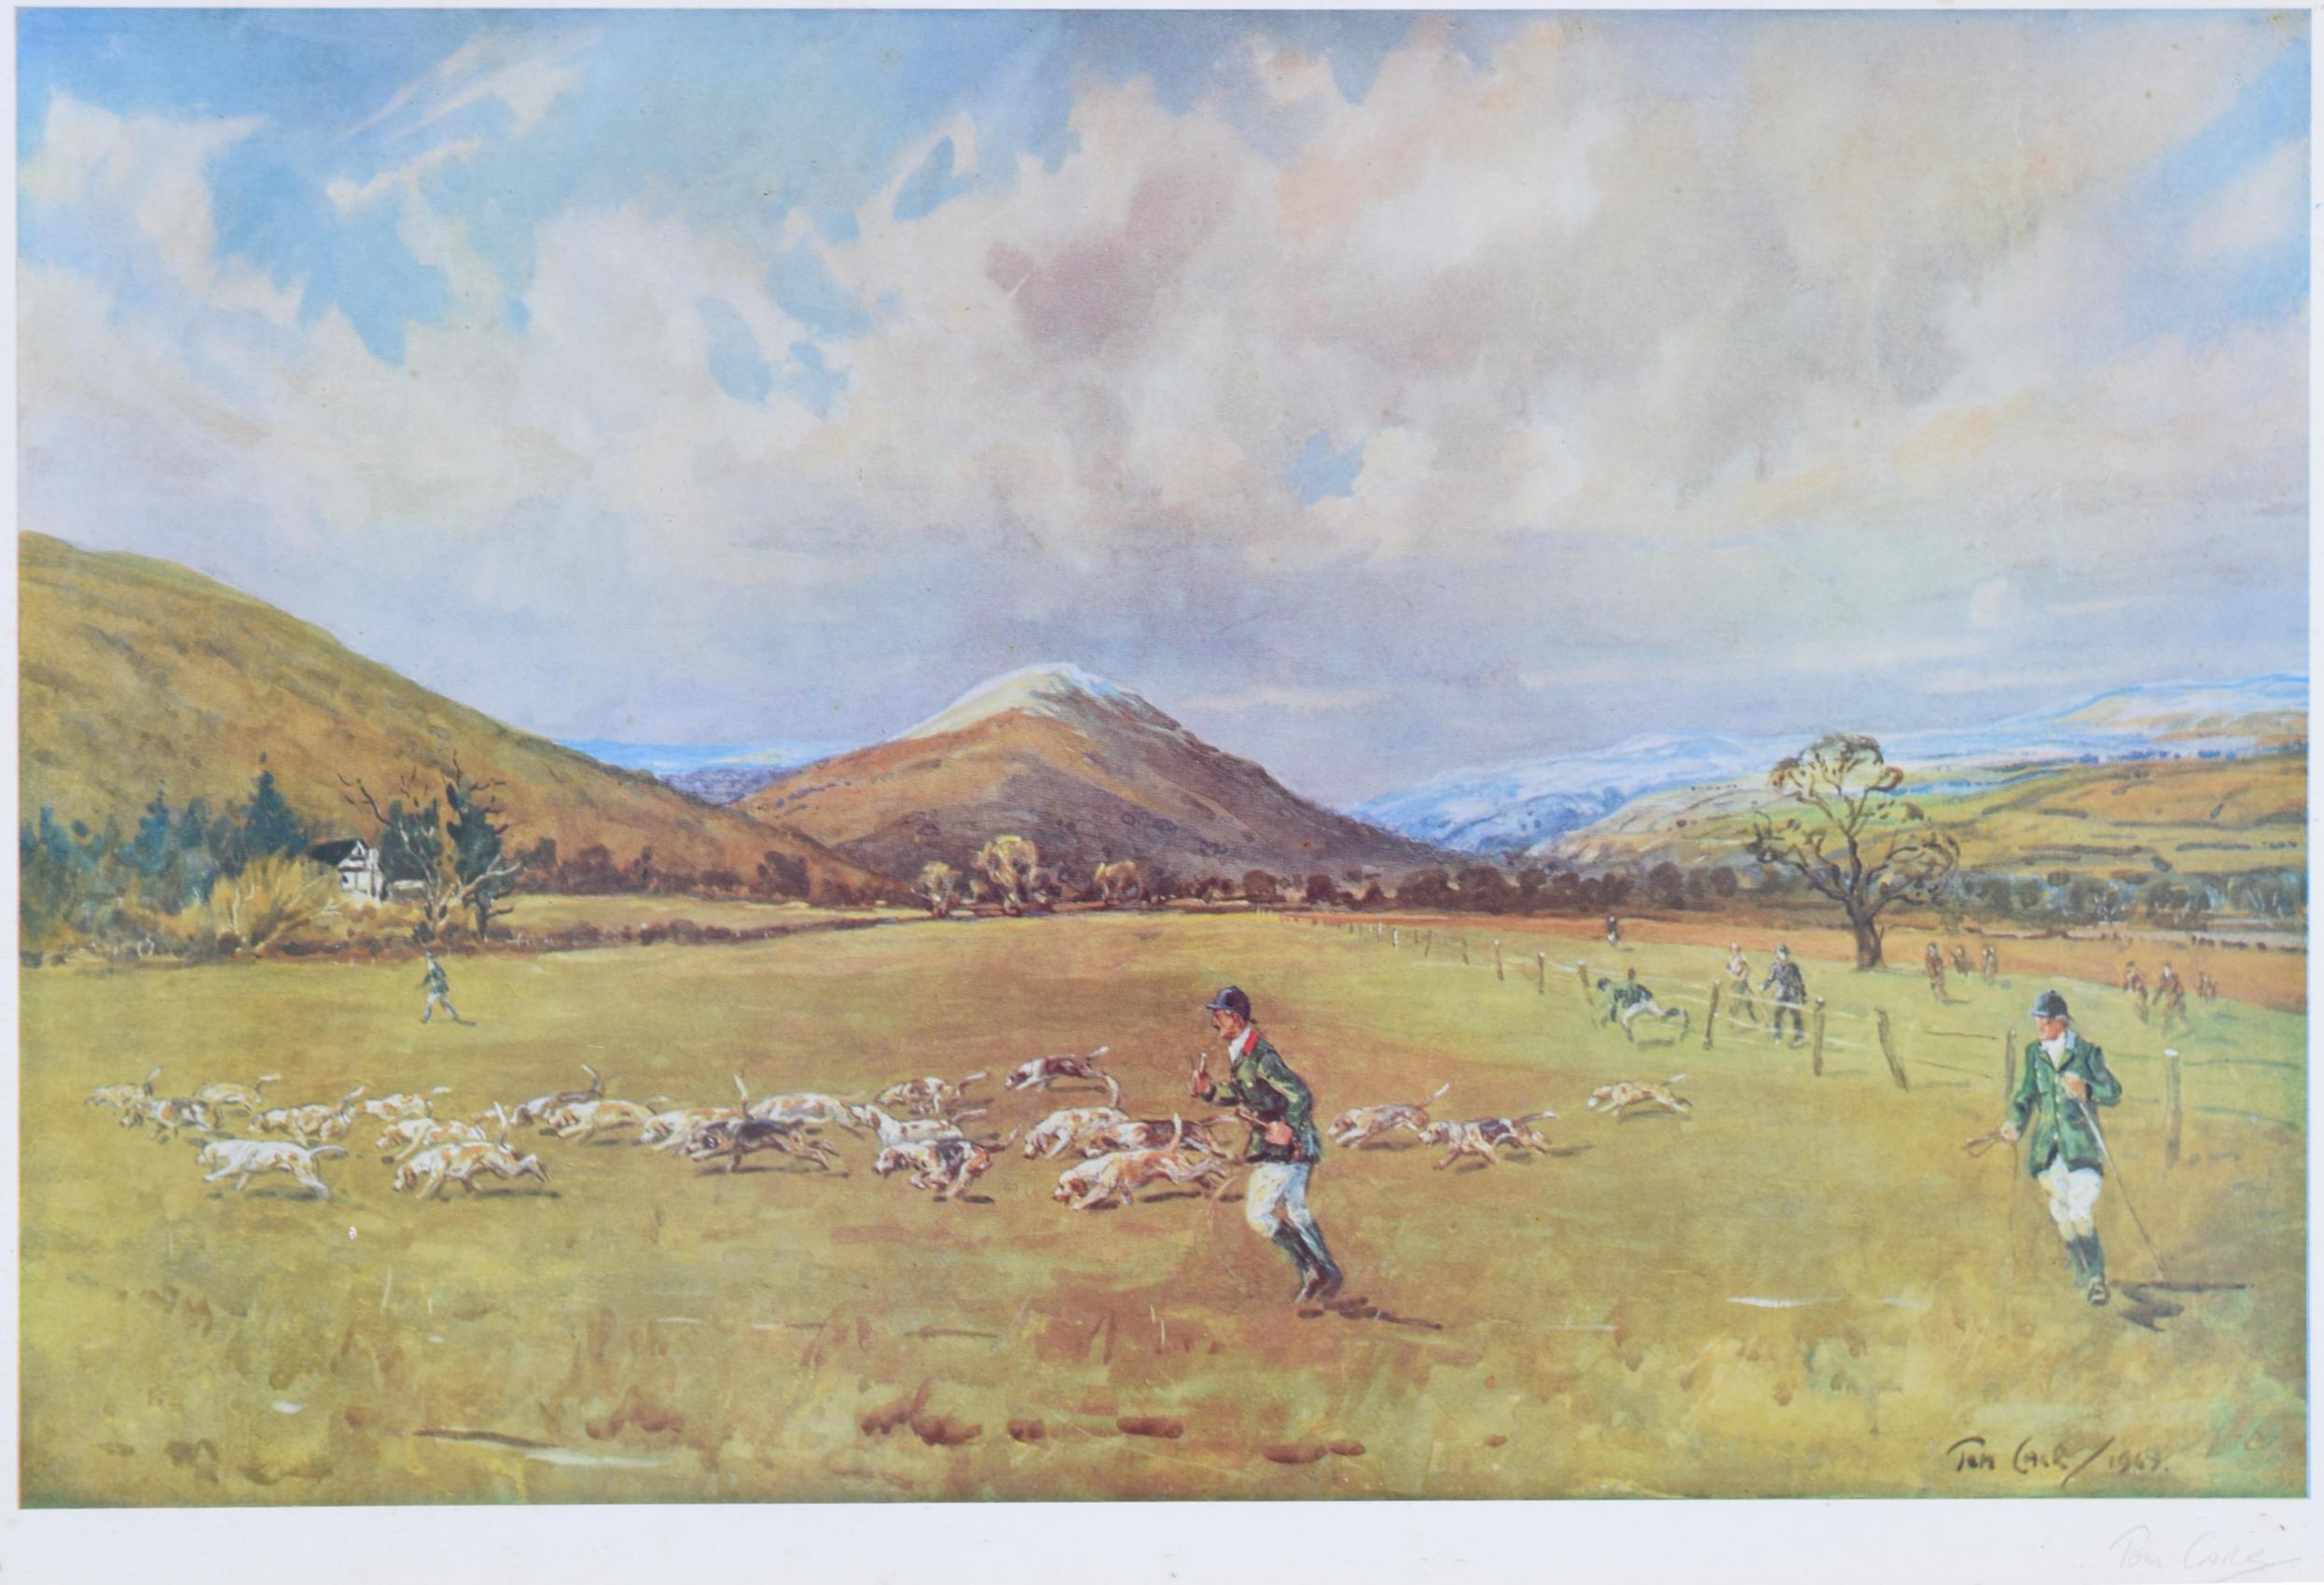 Tom Carr (1912 - 1977)
Die Shropshire Beagles
Chromolithographie
33 x 48 cm

Signiert mit Bleistift unten rechts.

Eine klassische Carr-Jagdradierung mit einer Darstellung der Shropshire Beagles.

Tom Carr war ein Maler von Jagd- und Rennszenen. Er